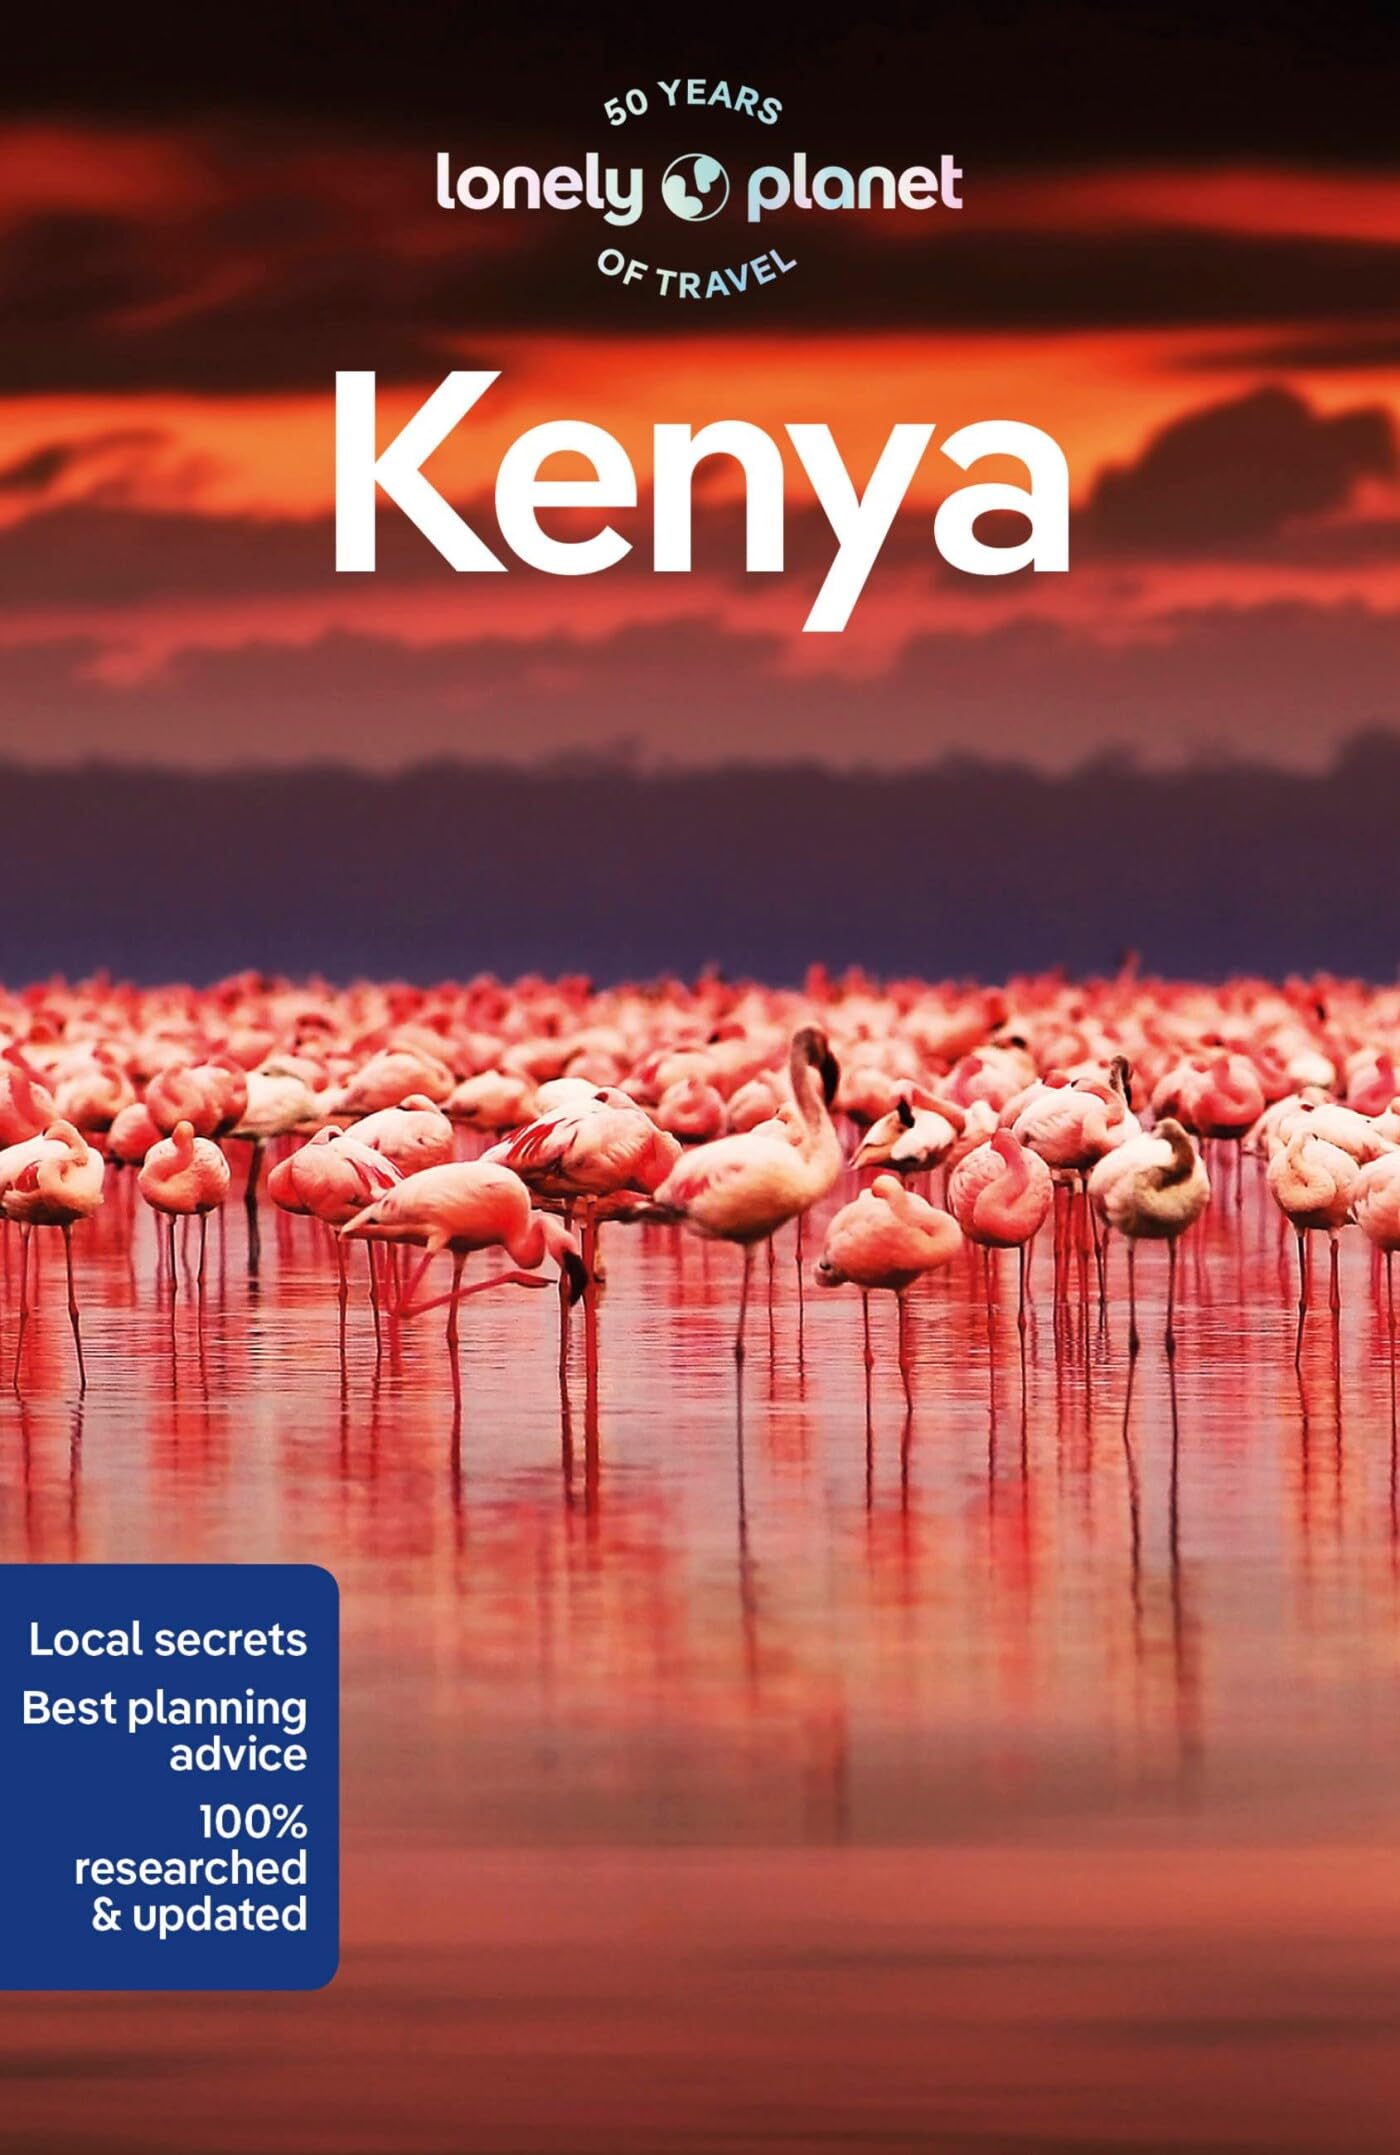 מדריך קניה לונלי פלנט 11